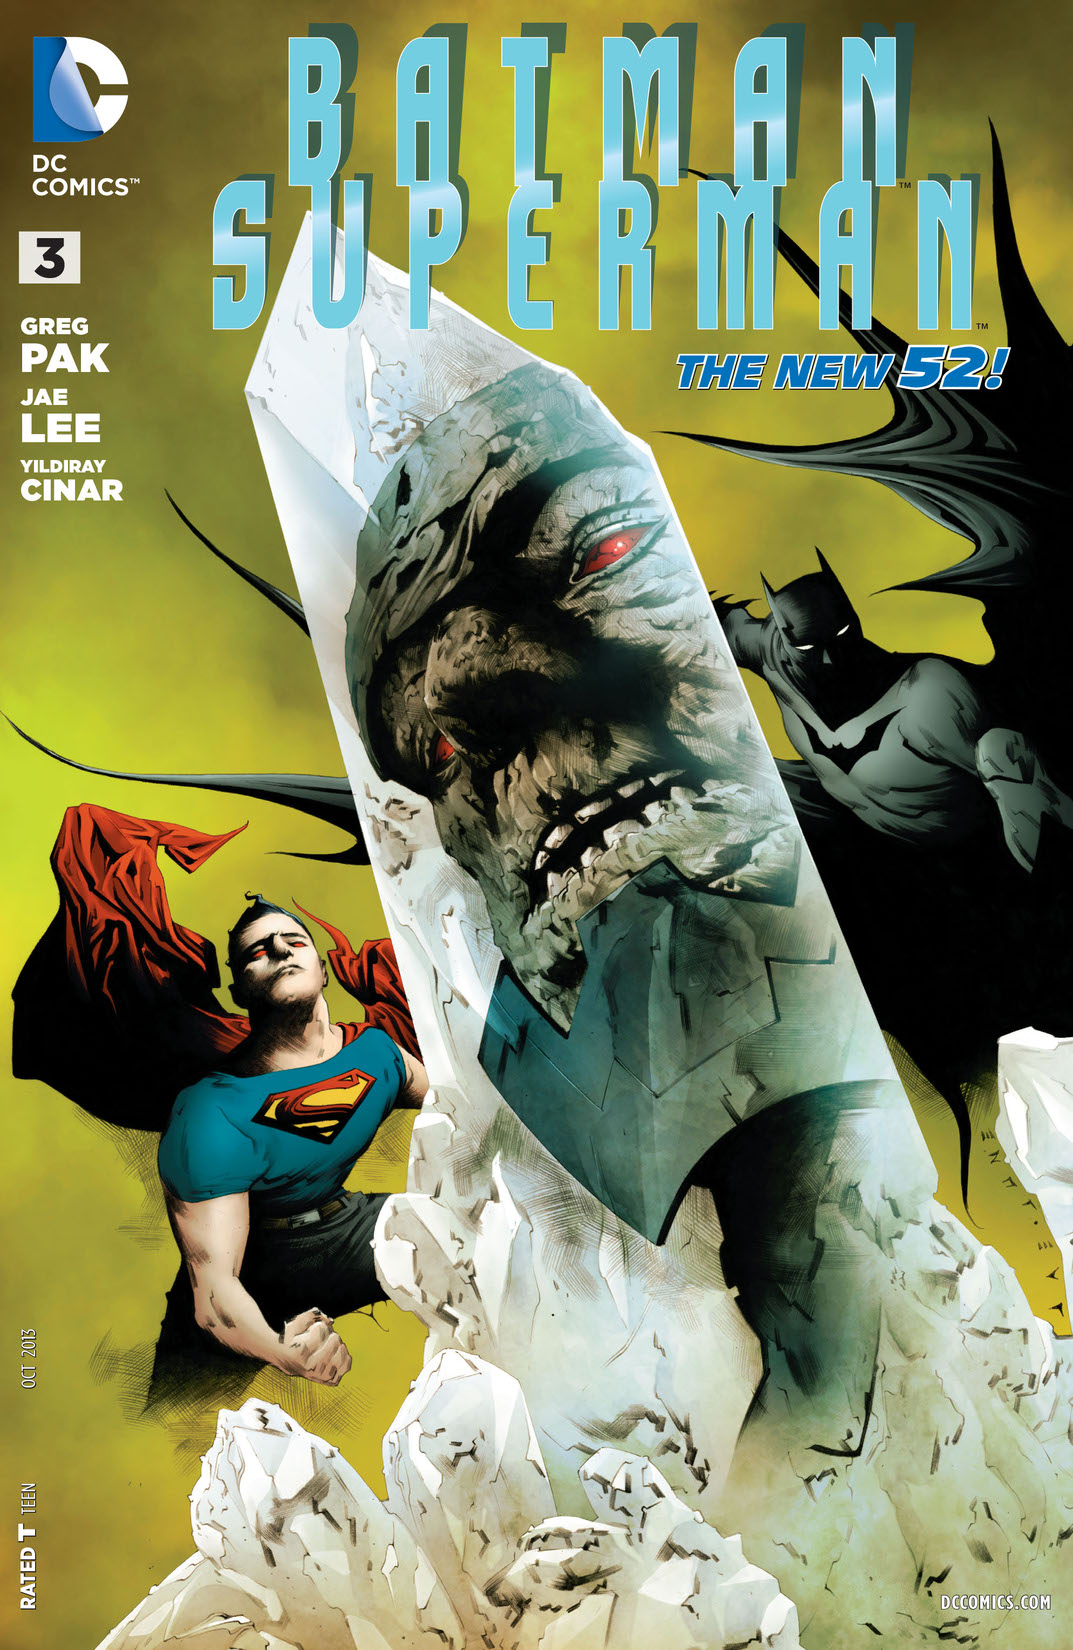 Batman/Superman (2013-) #3 preview images